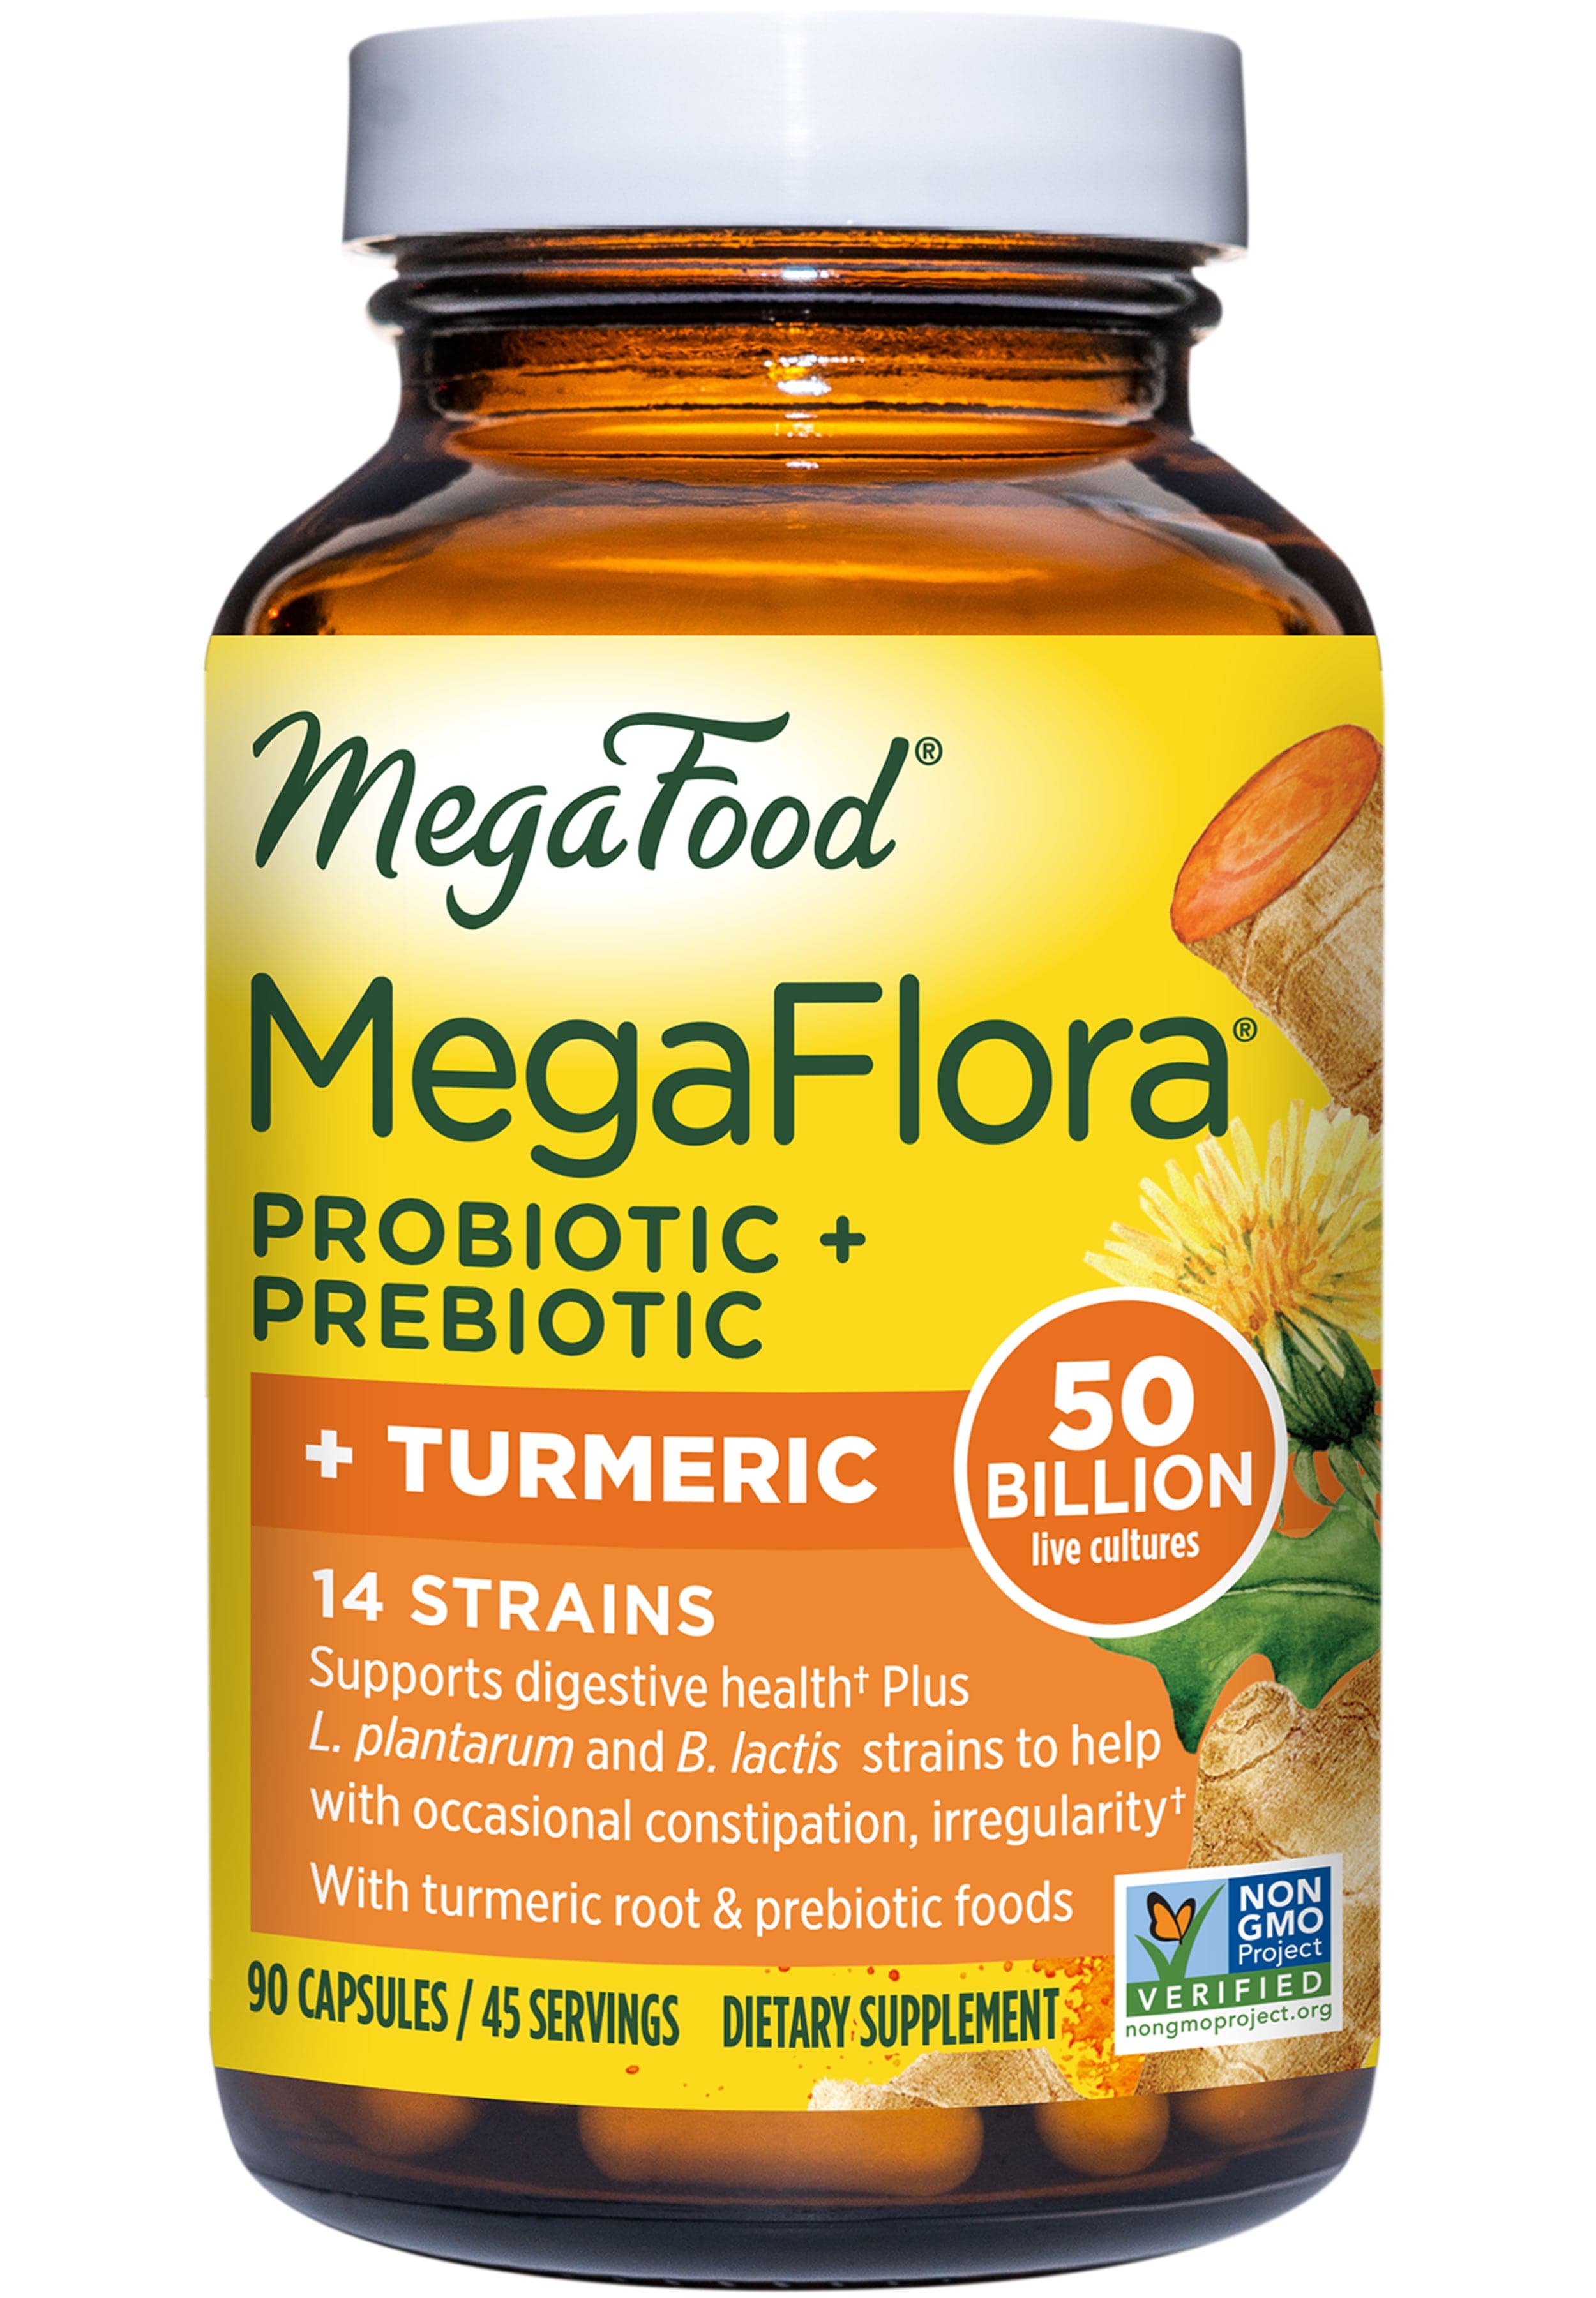 MegaFood MegaFlora Probiotic + Prebiotic + Turmeric (Formerly MegaFlora Probiotic with Turmeric)